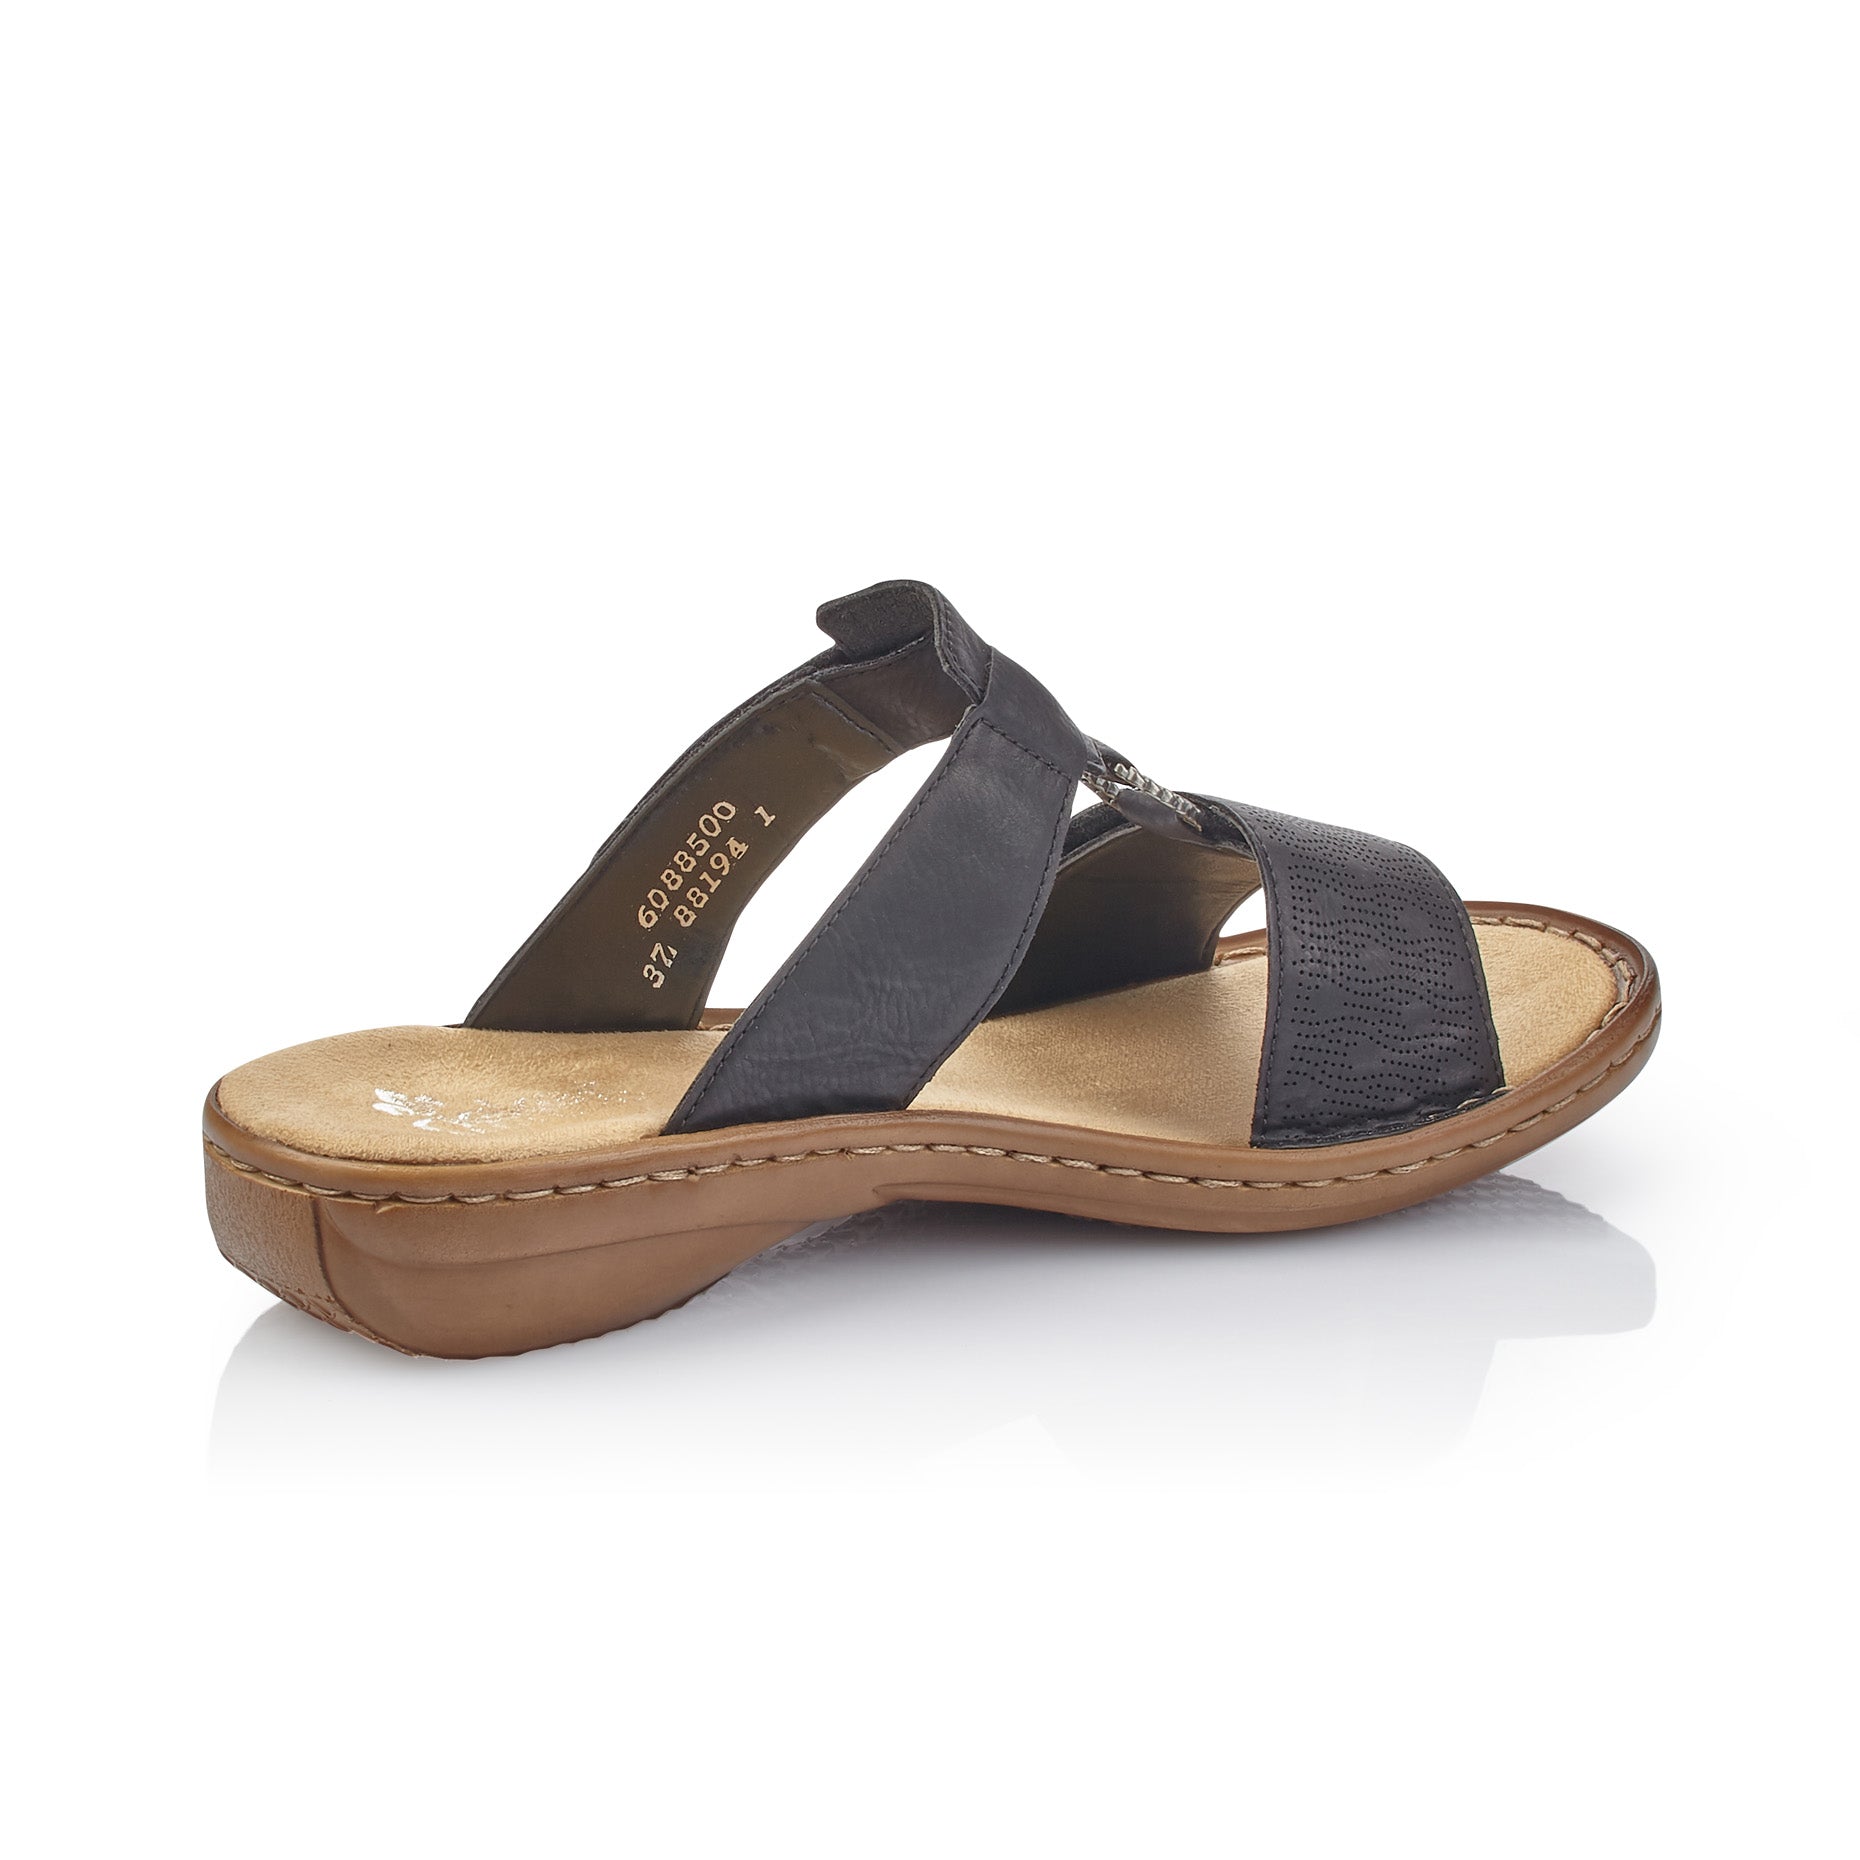 Rieker 60885-00 Women's Sandals